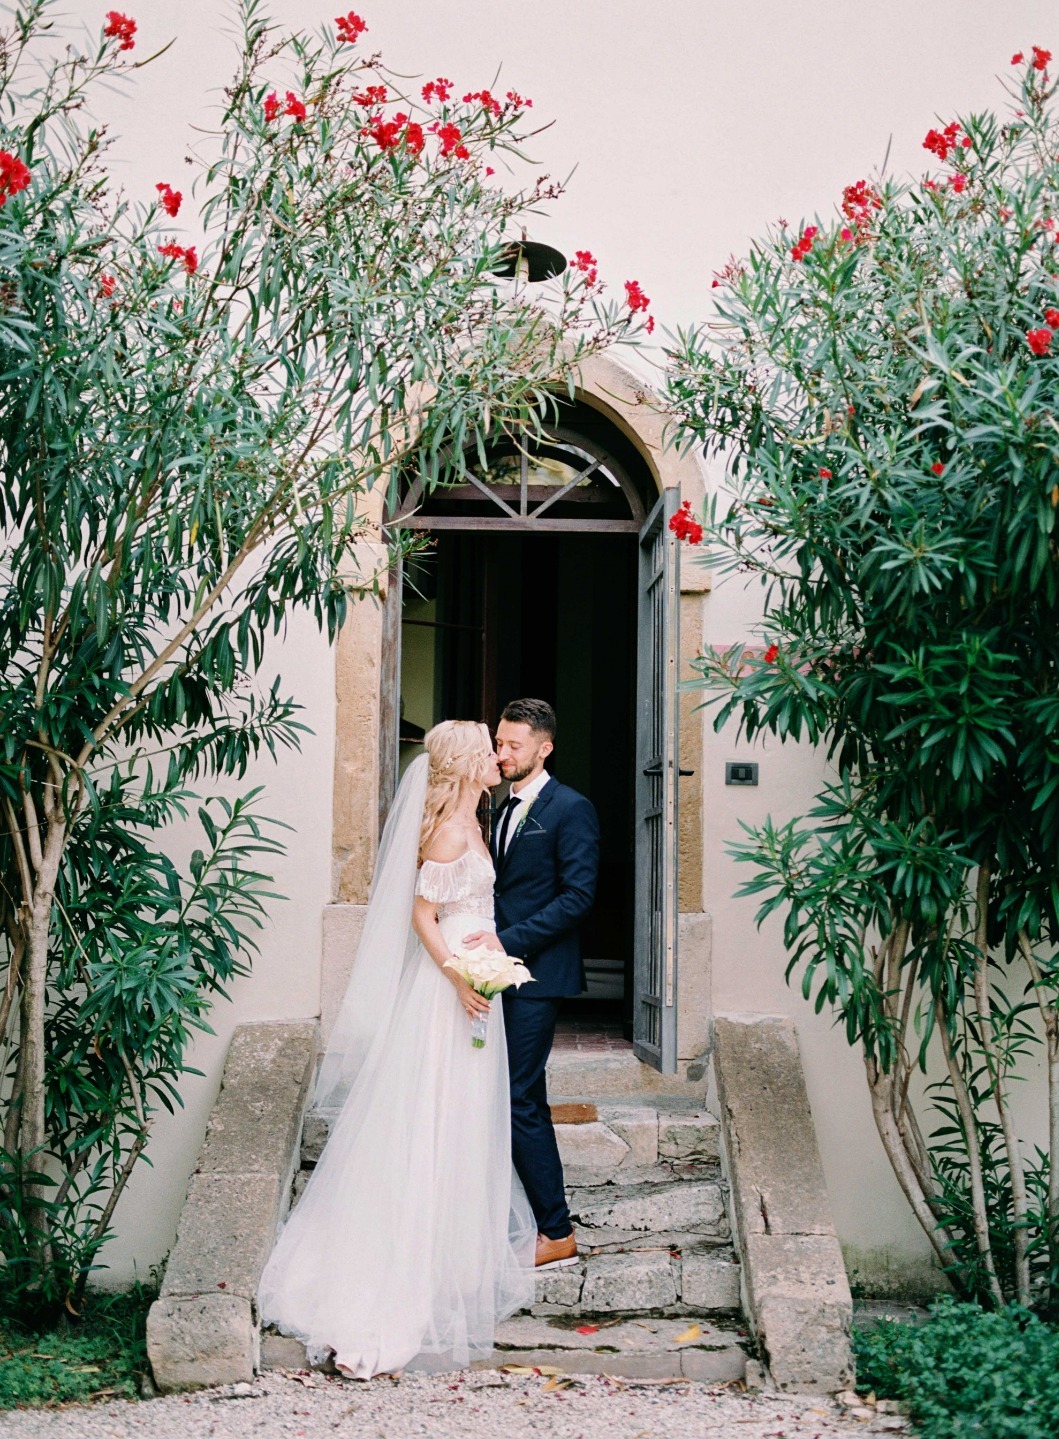 ФОТО ИЗ СТАТЬИ: Романтичная свадьба в Италии в белых тонах